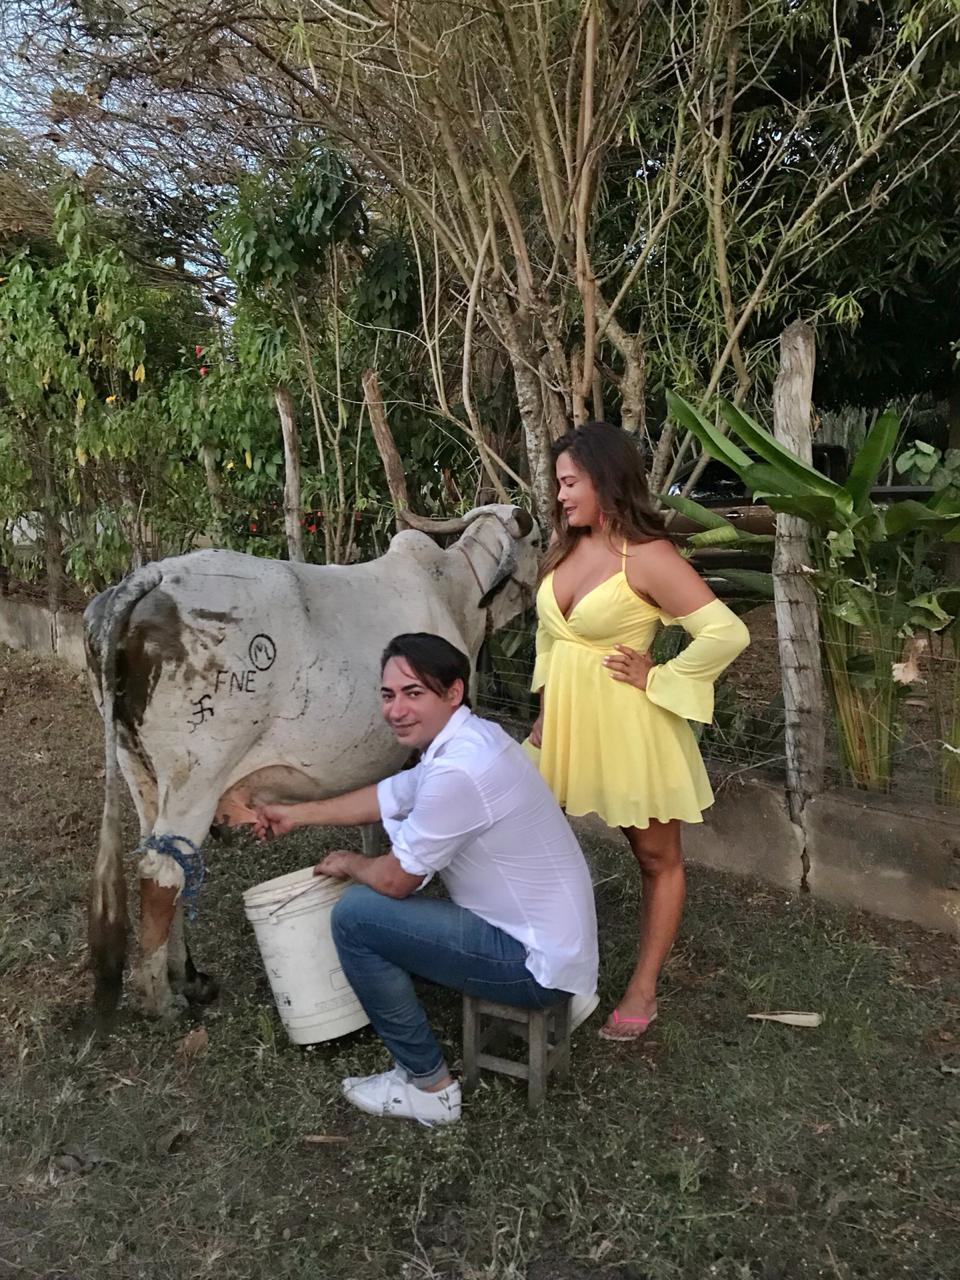 Geisy Arruda posa decotada em gravação com amigo Karlos Wendell no Piauí